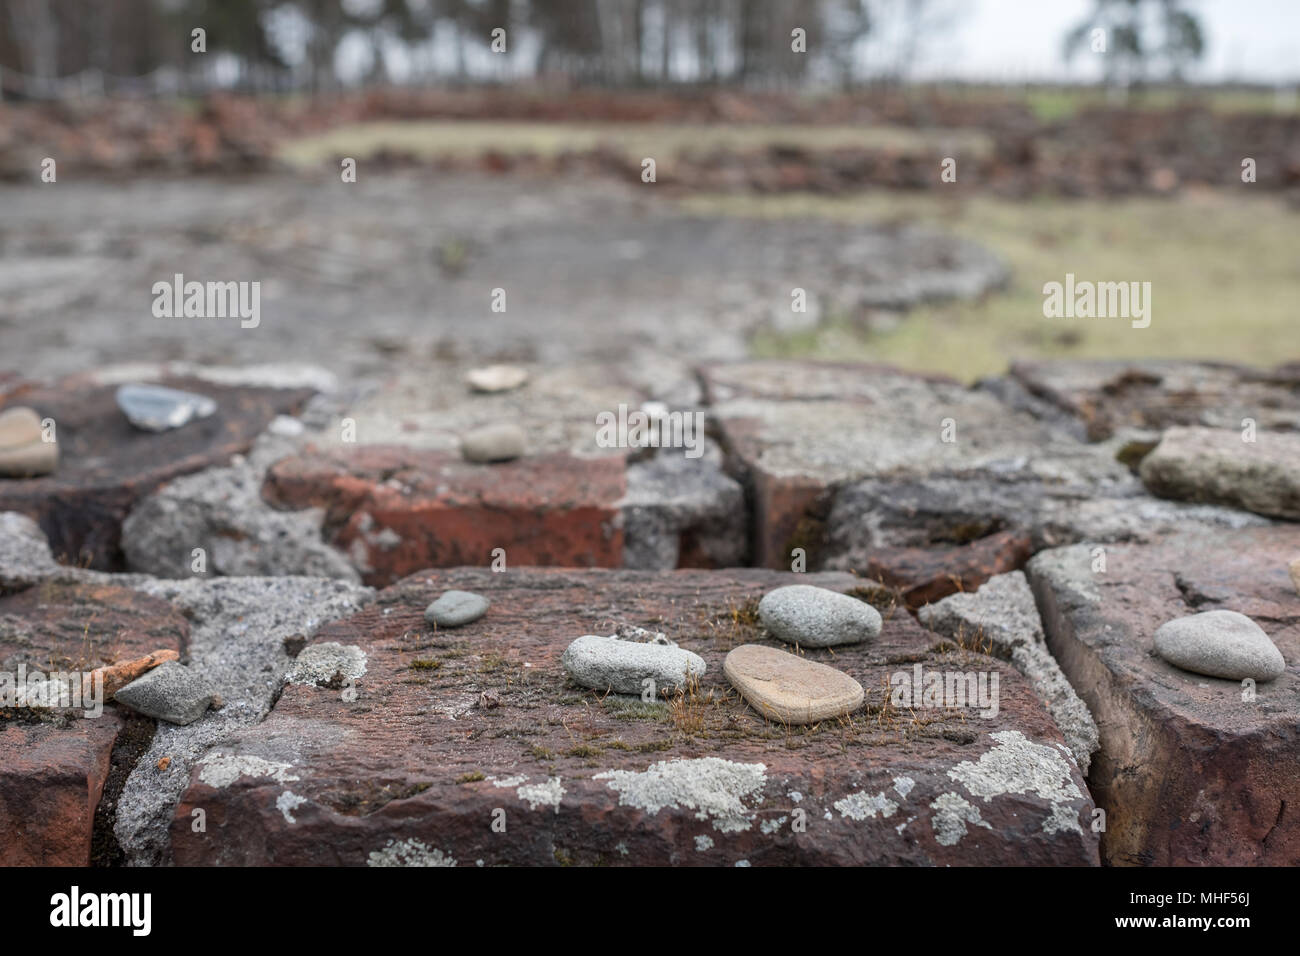 Ruines de crématorium à Auschwitz Birkenau Camp de concentration, détruit par de courageux prisonniers juifs dans un soulèvement contre les nazis allemands. Banque D'Images